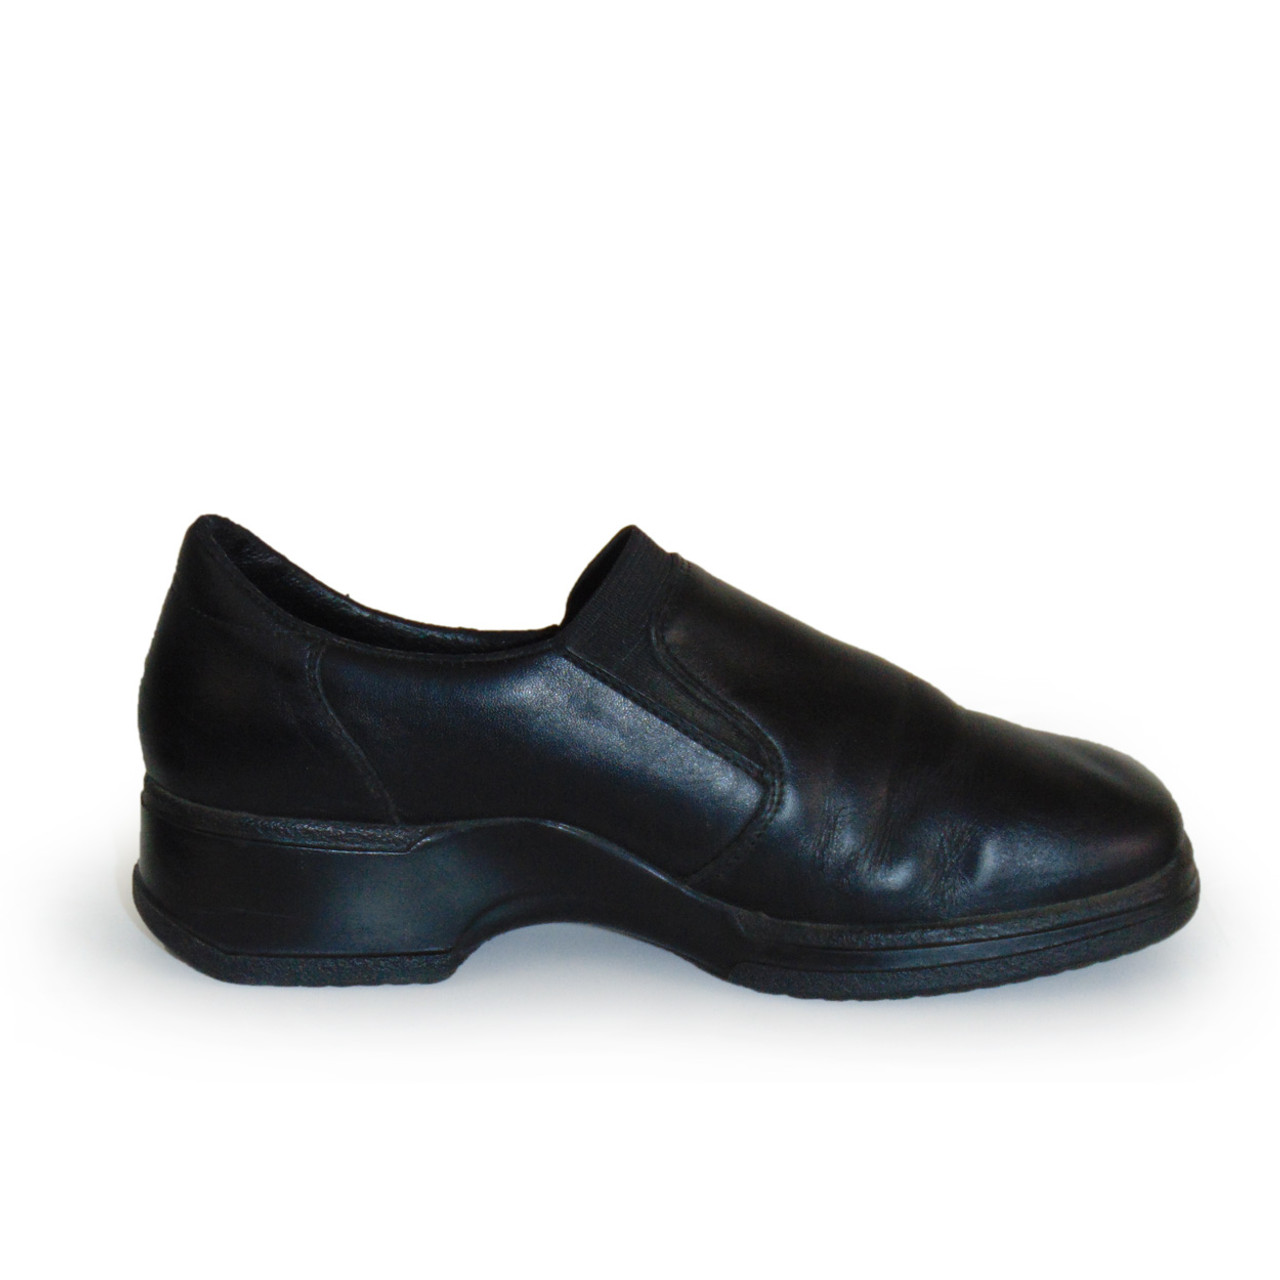 Black Slip On Square Toe Shoes Size 